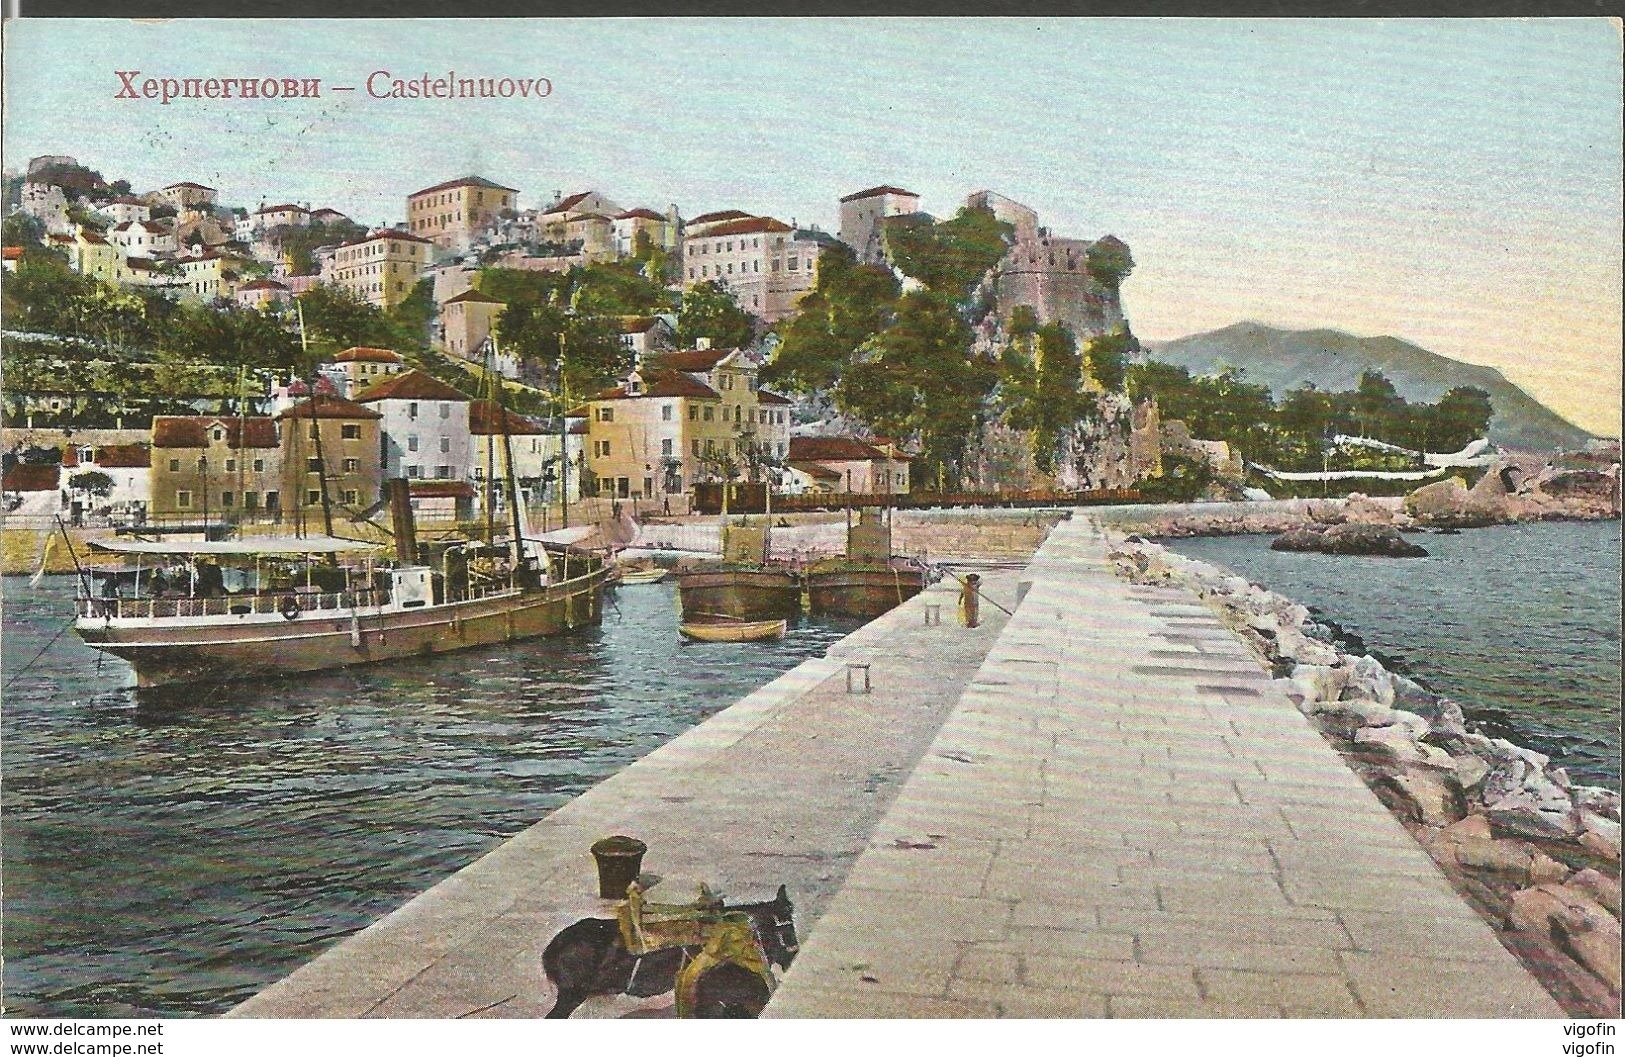 HERCEGNOVI CASTENUOVO MONTENEGRO CRNA GORA, PC, Circulated - Montenegro